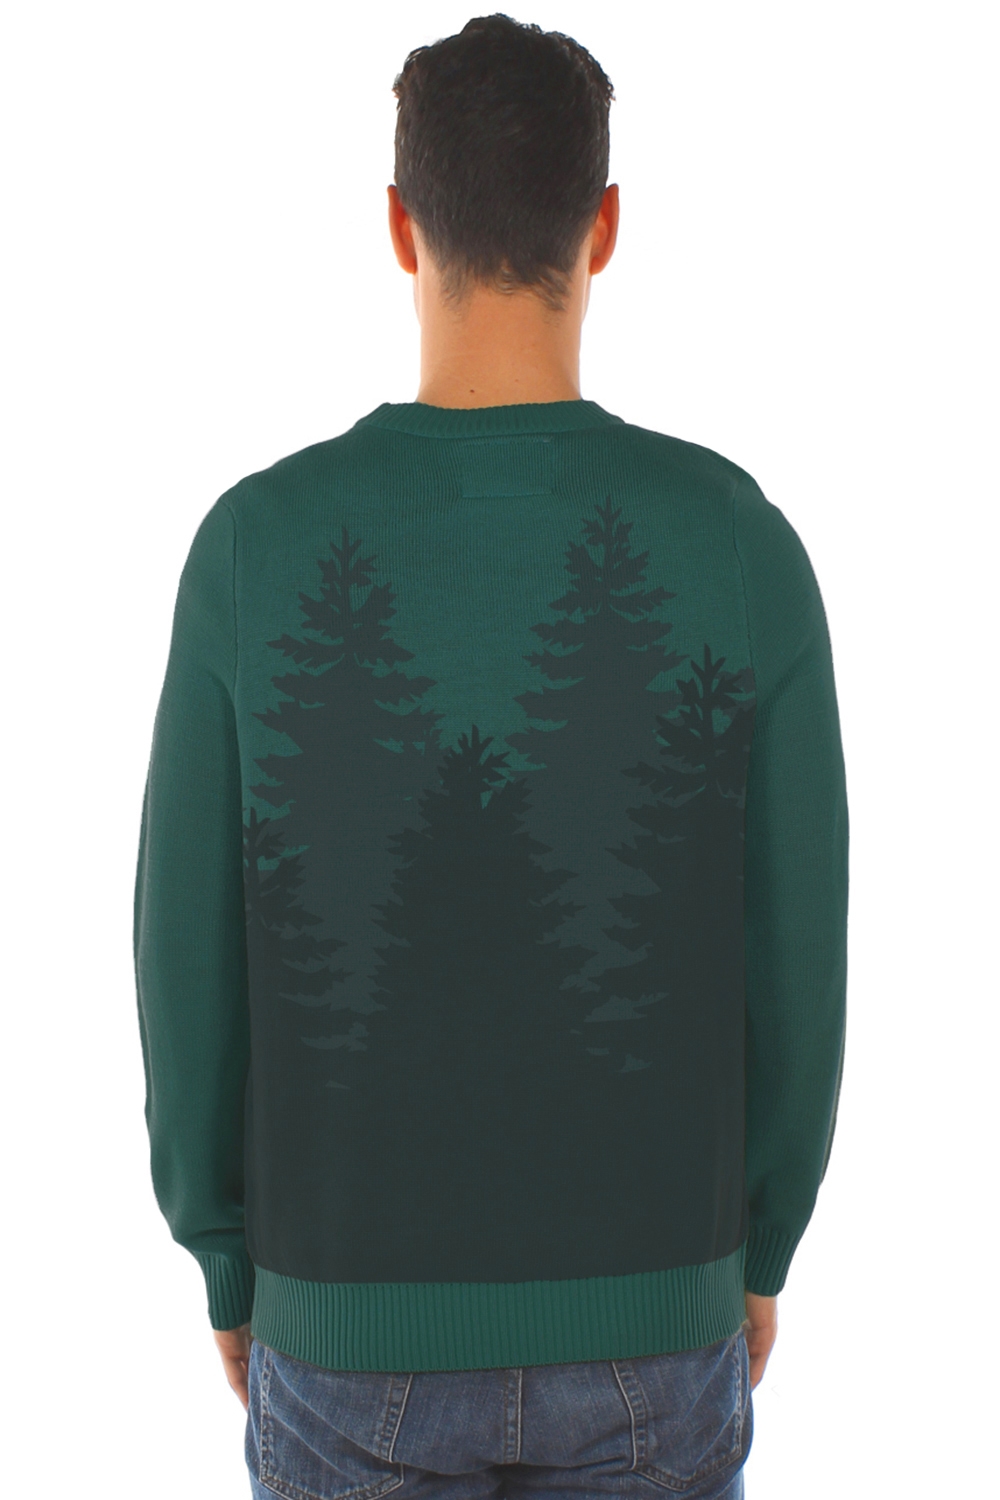 Centaur Claus Christmas Sweater Image3